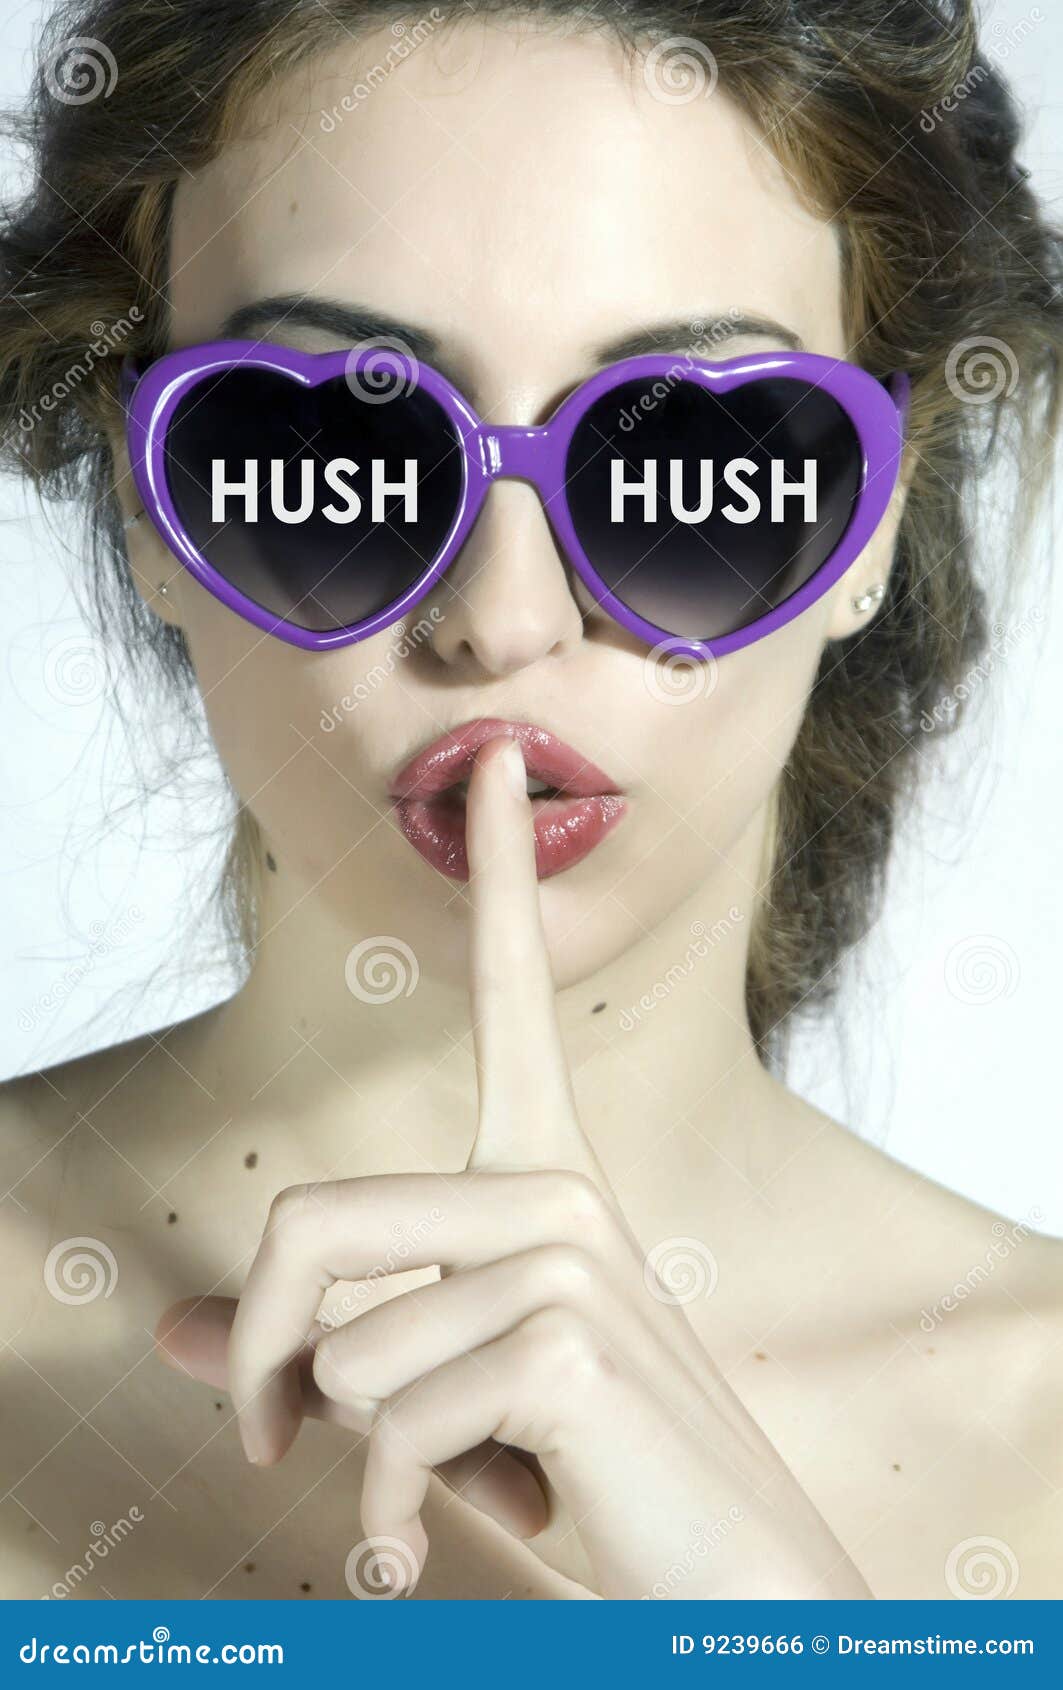 hush-hush-9239666.jpg